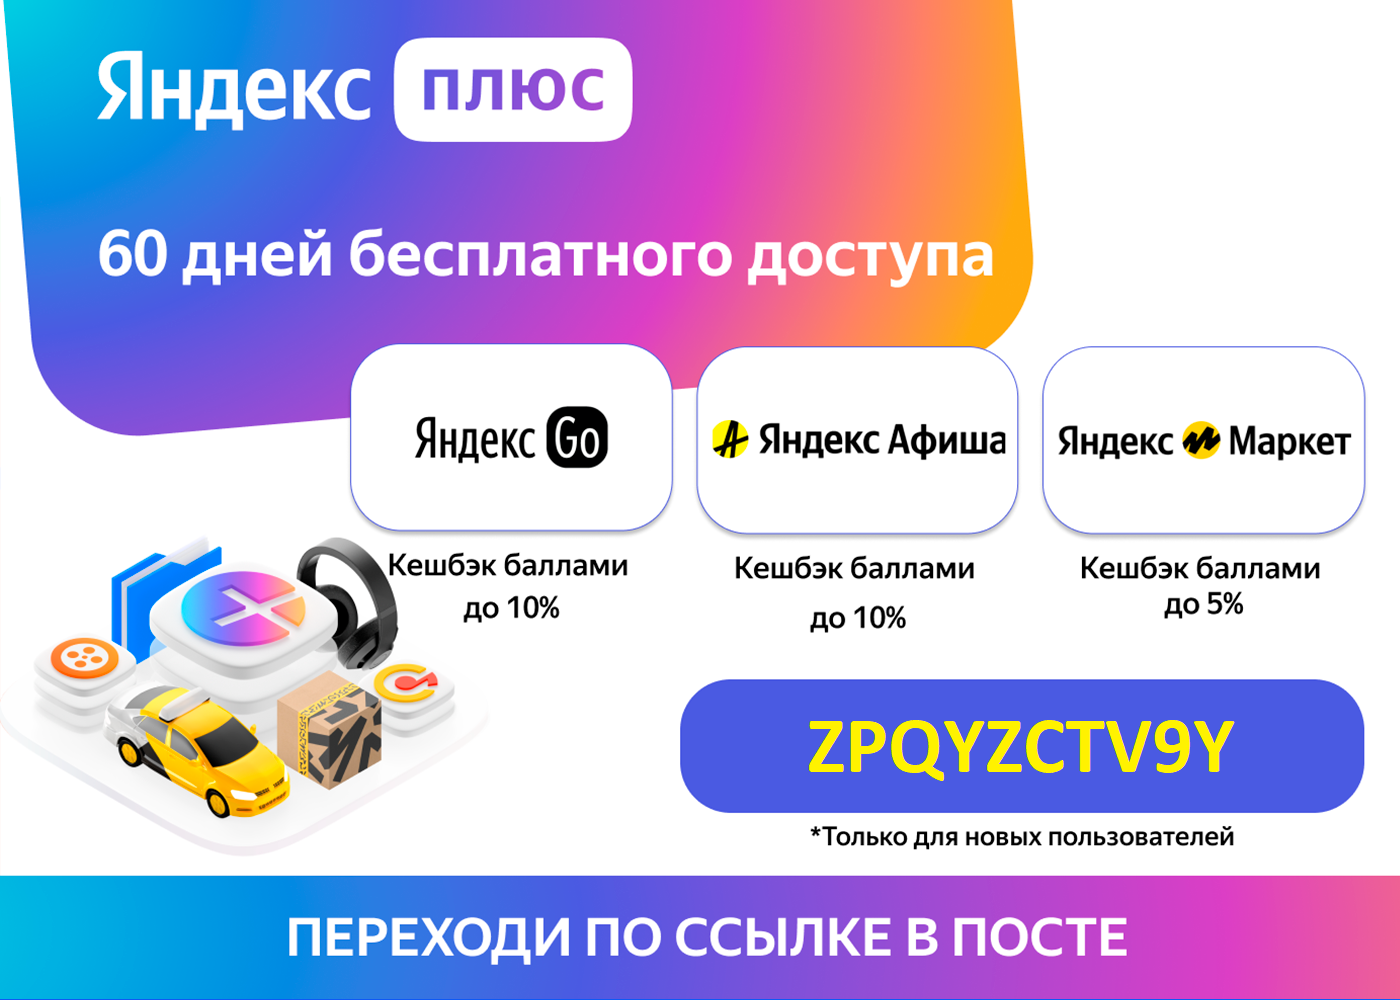 Яндекс - анализ компании: обзор, характеристика, финансовое положение